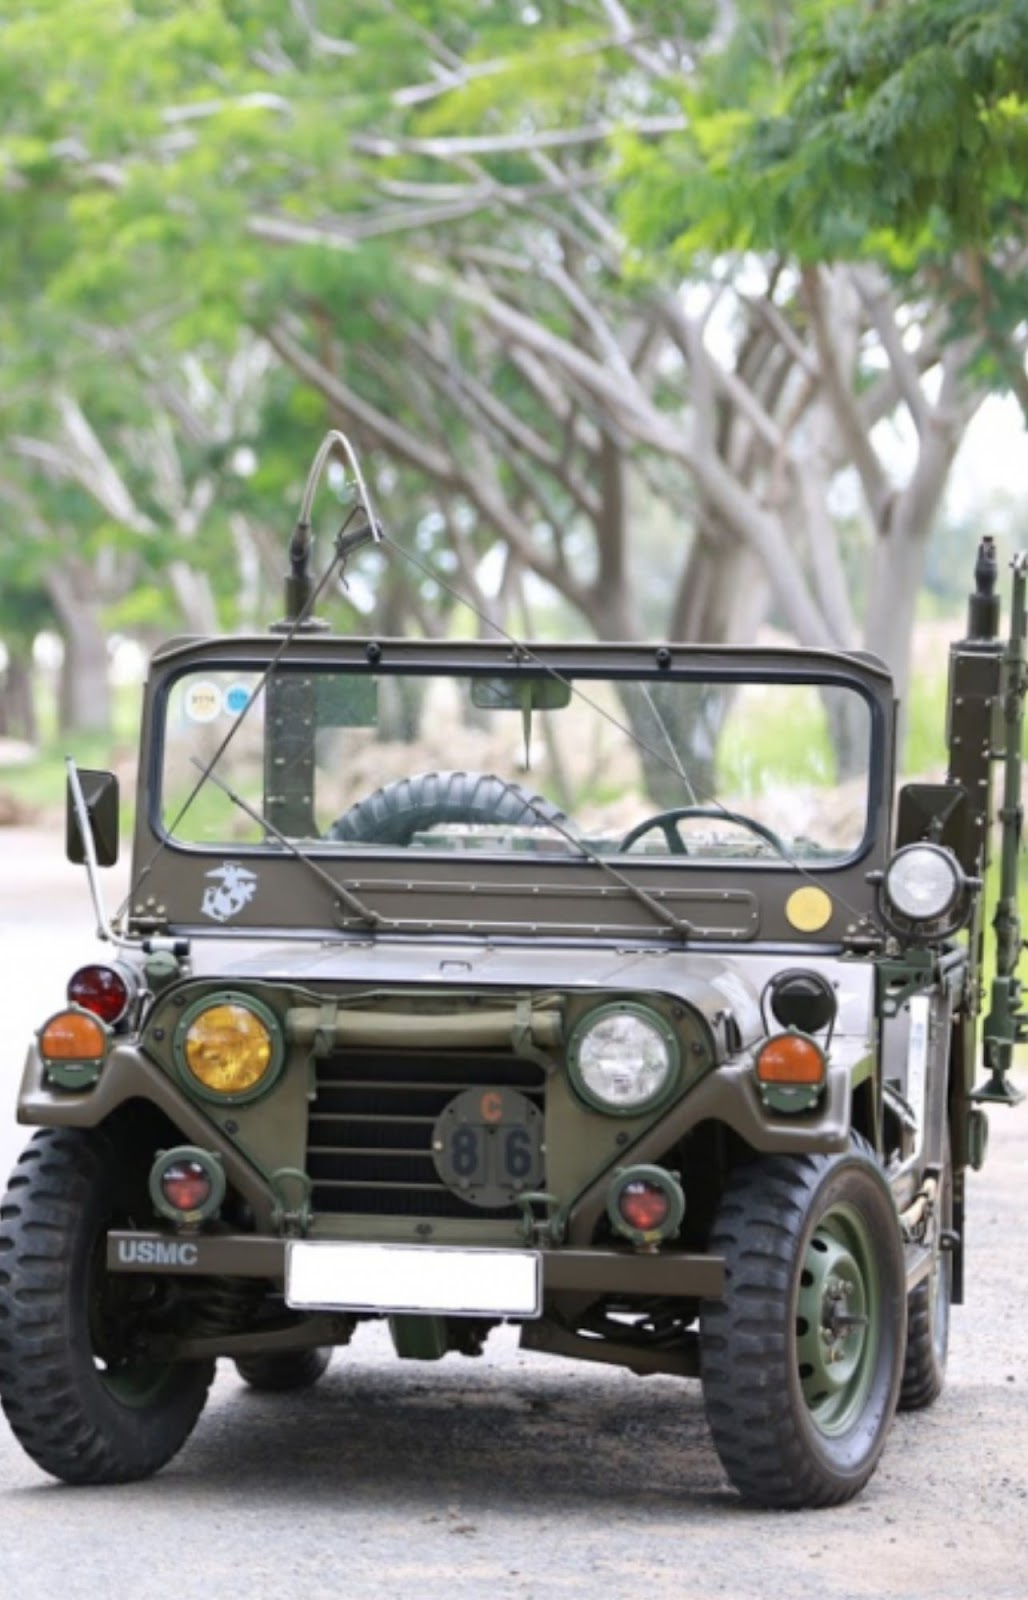 Explore Saigon in style with Saigon Jeep Tours